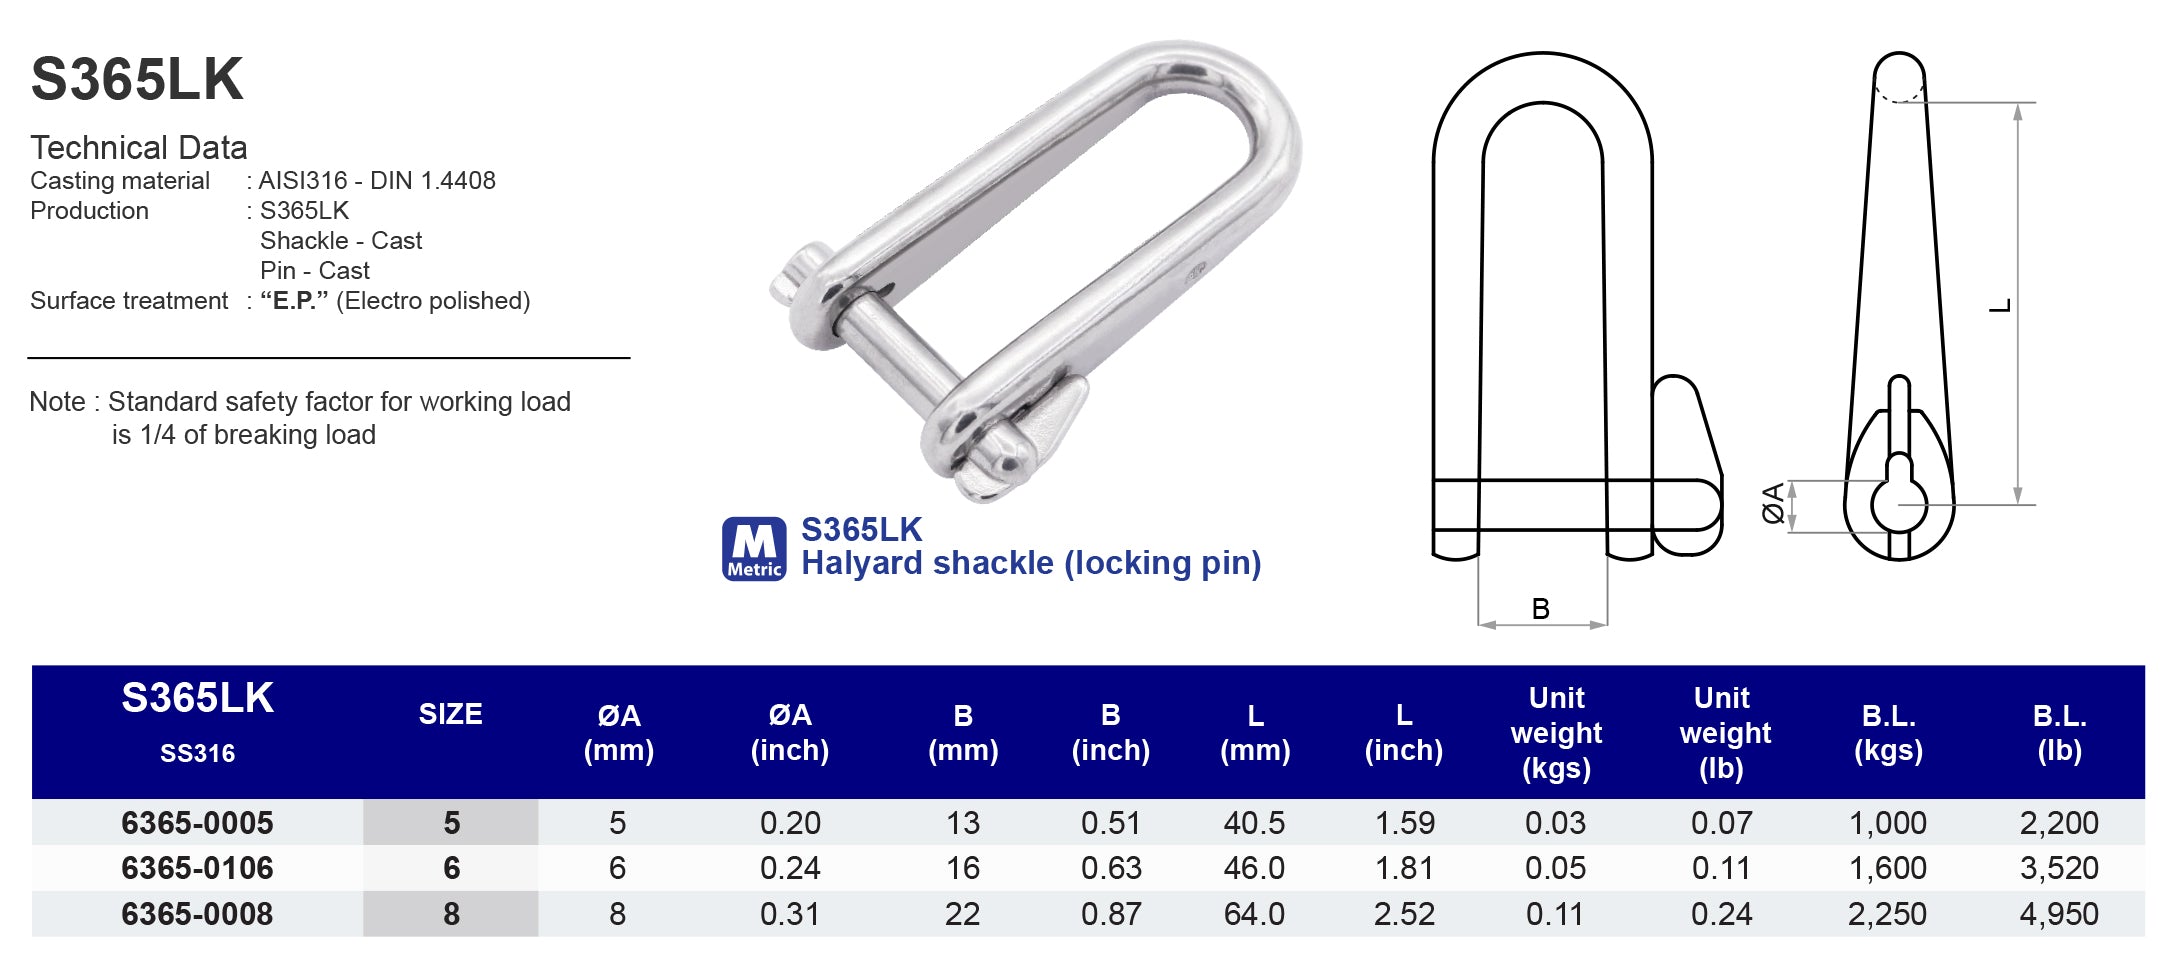 S365LK Halyard shackle (locking pin) - 316